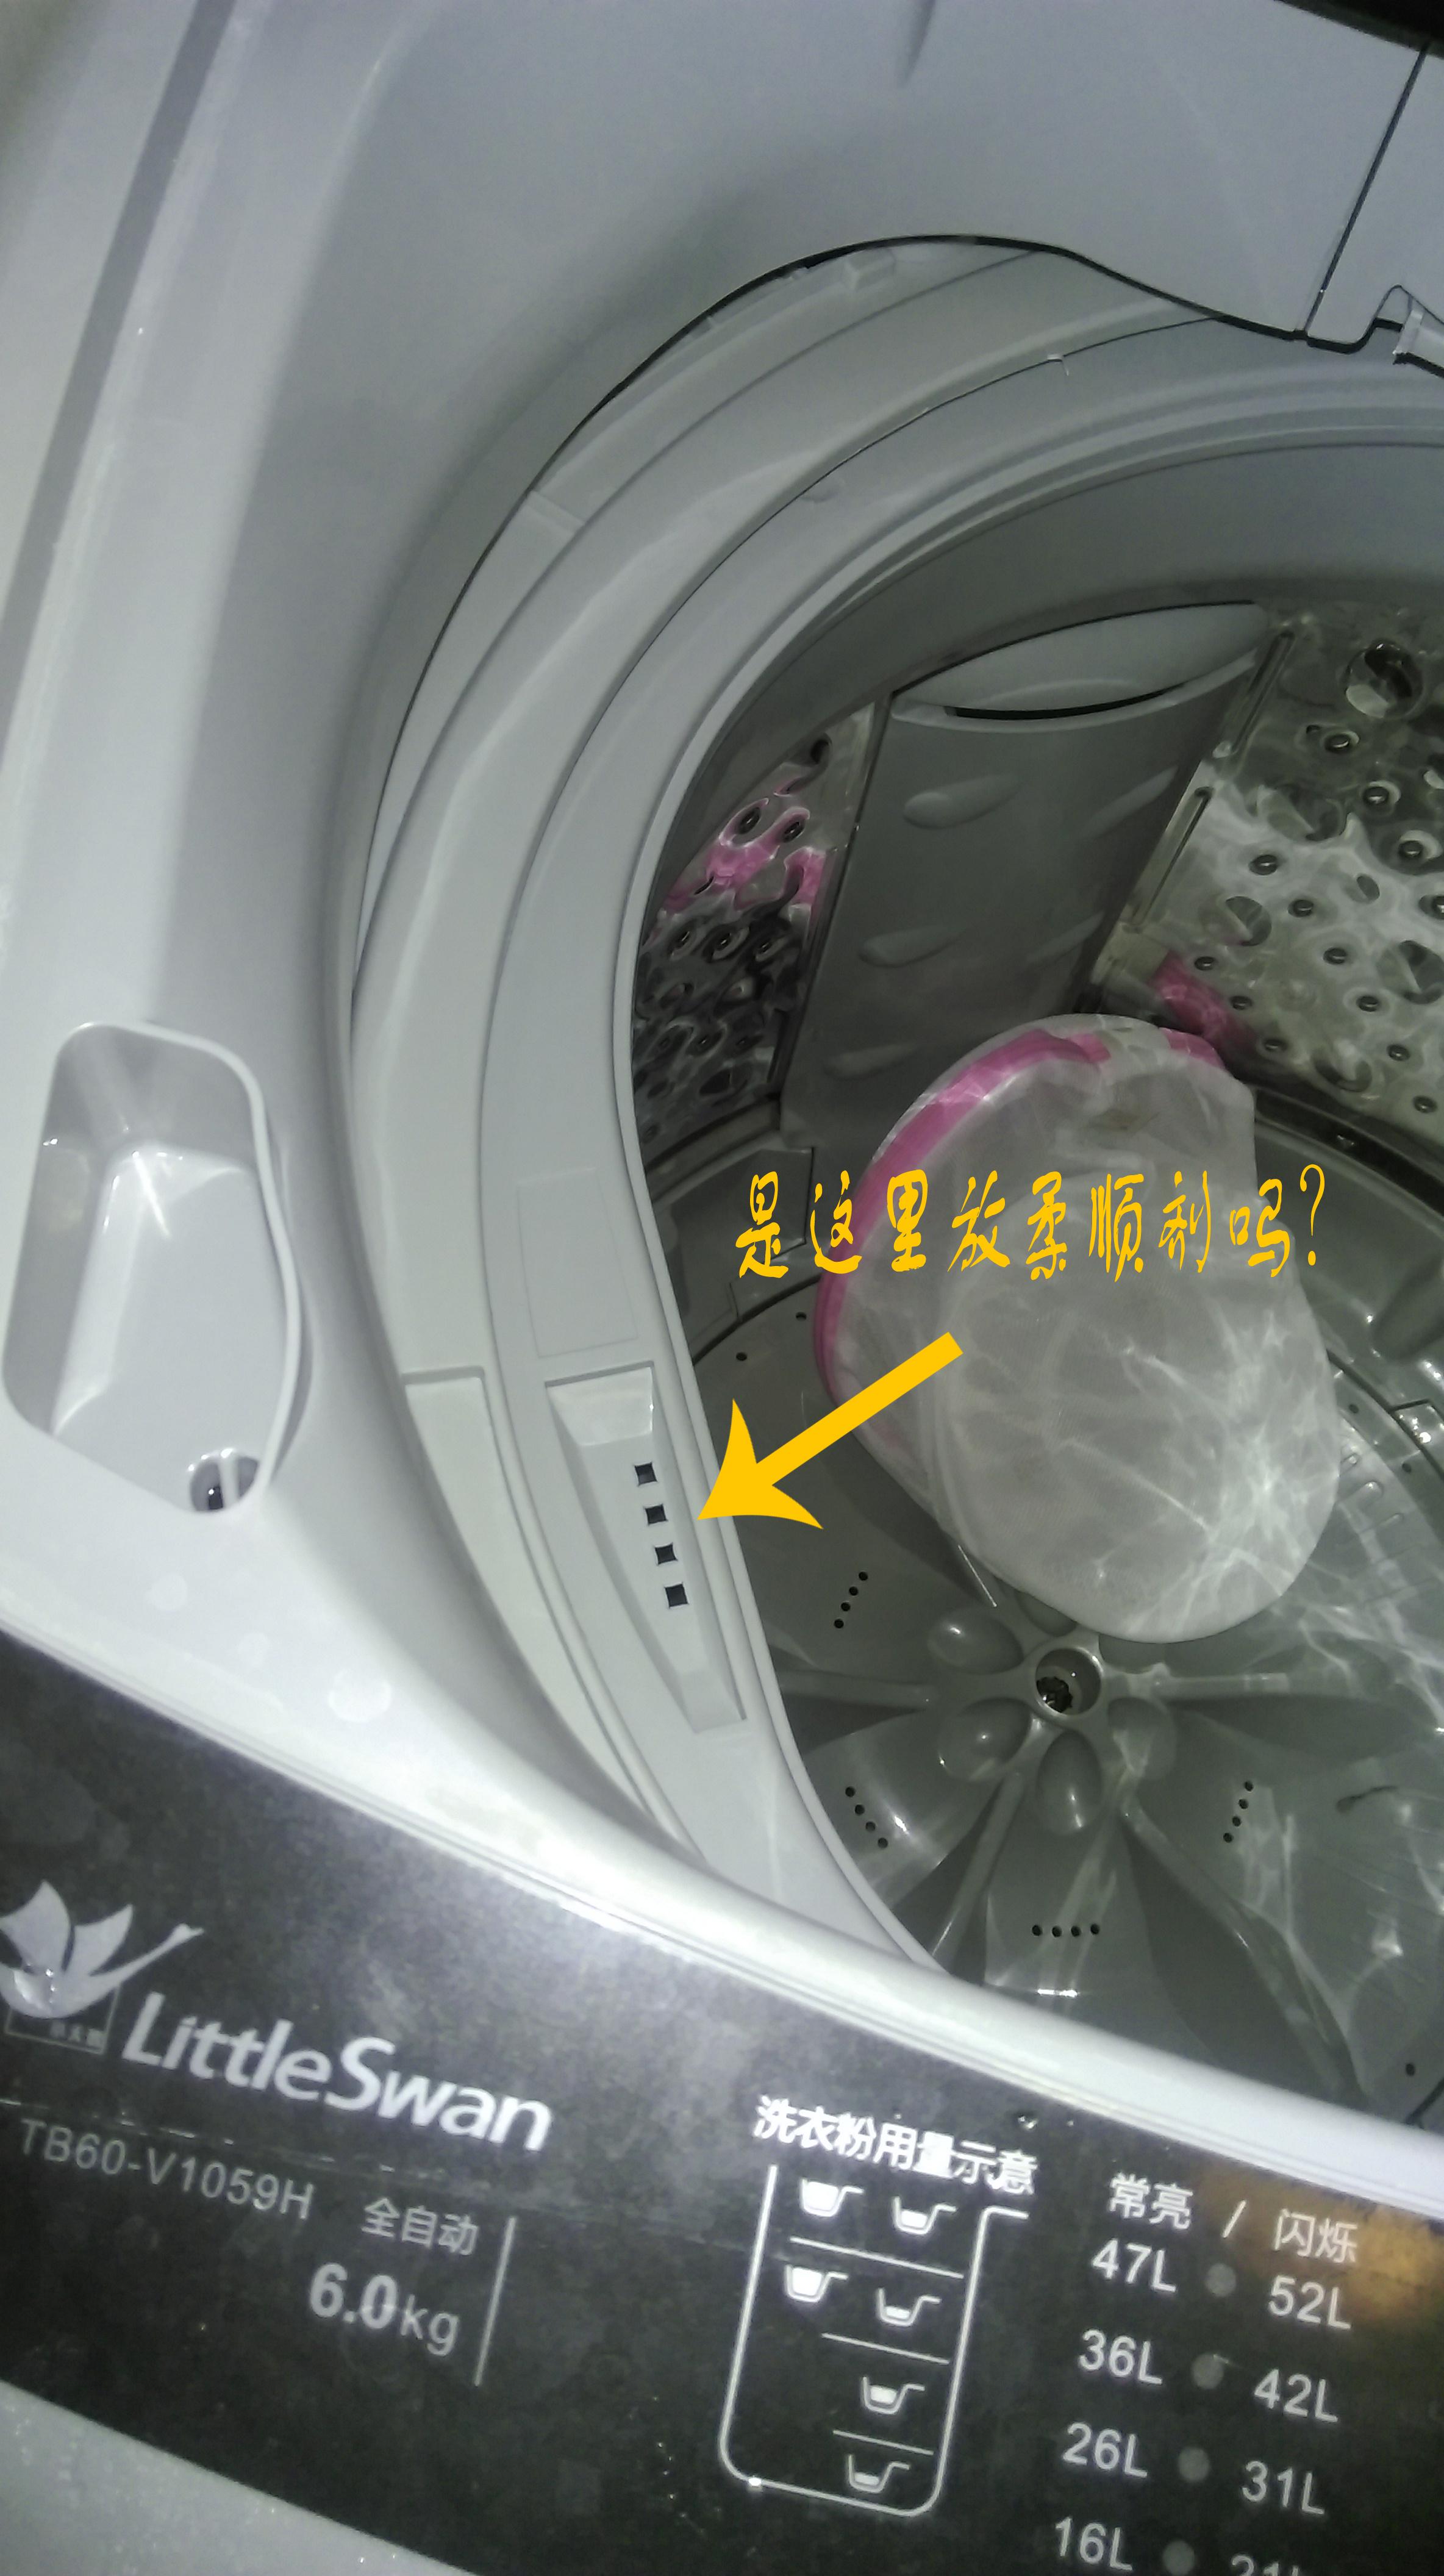 直筒洗衣机怎么放柔顺剂? - 知乎